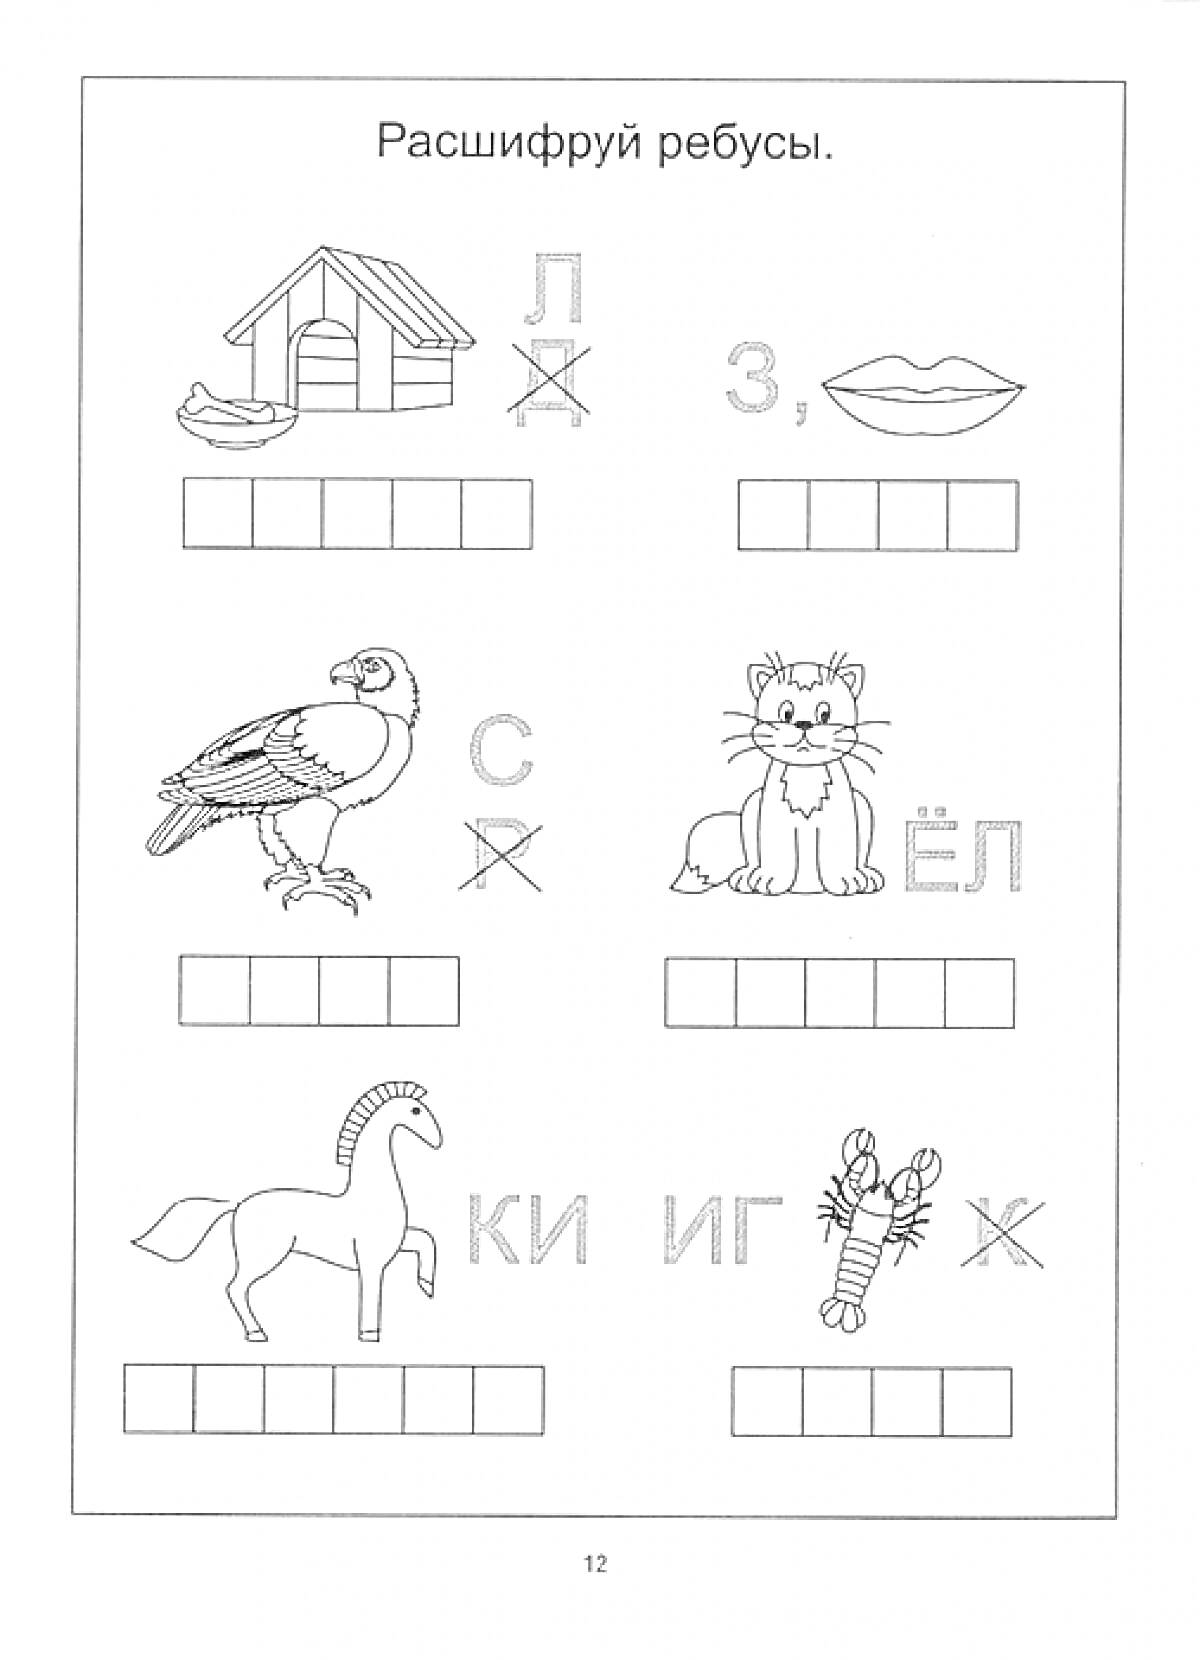 Раскраска Ребусы с изображениями: домик, лодка и крестик; губы и буква З; птица и буквы С и крестик; кот и ёлка; лошадь и буква К; ракета, ки и г и буква Ж